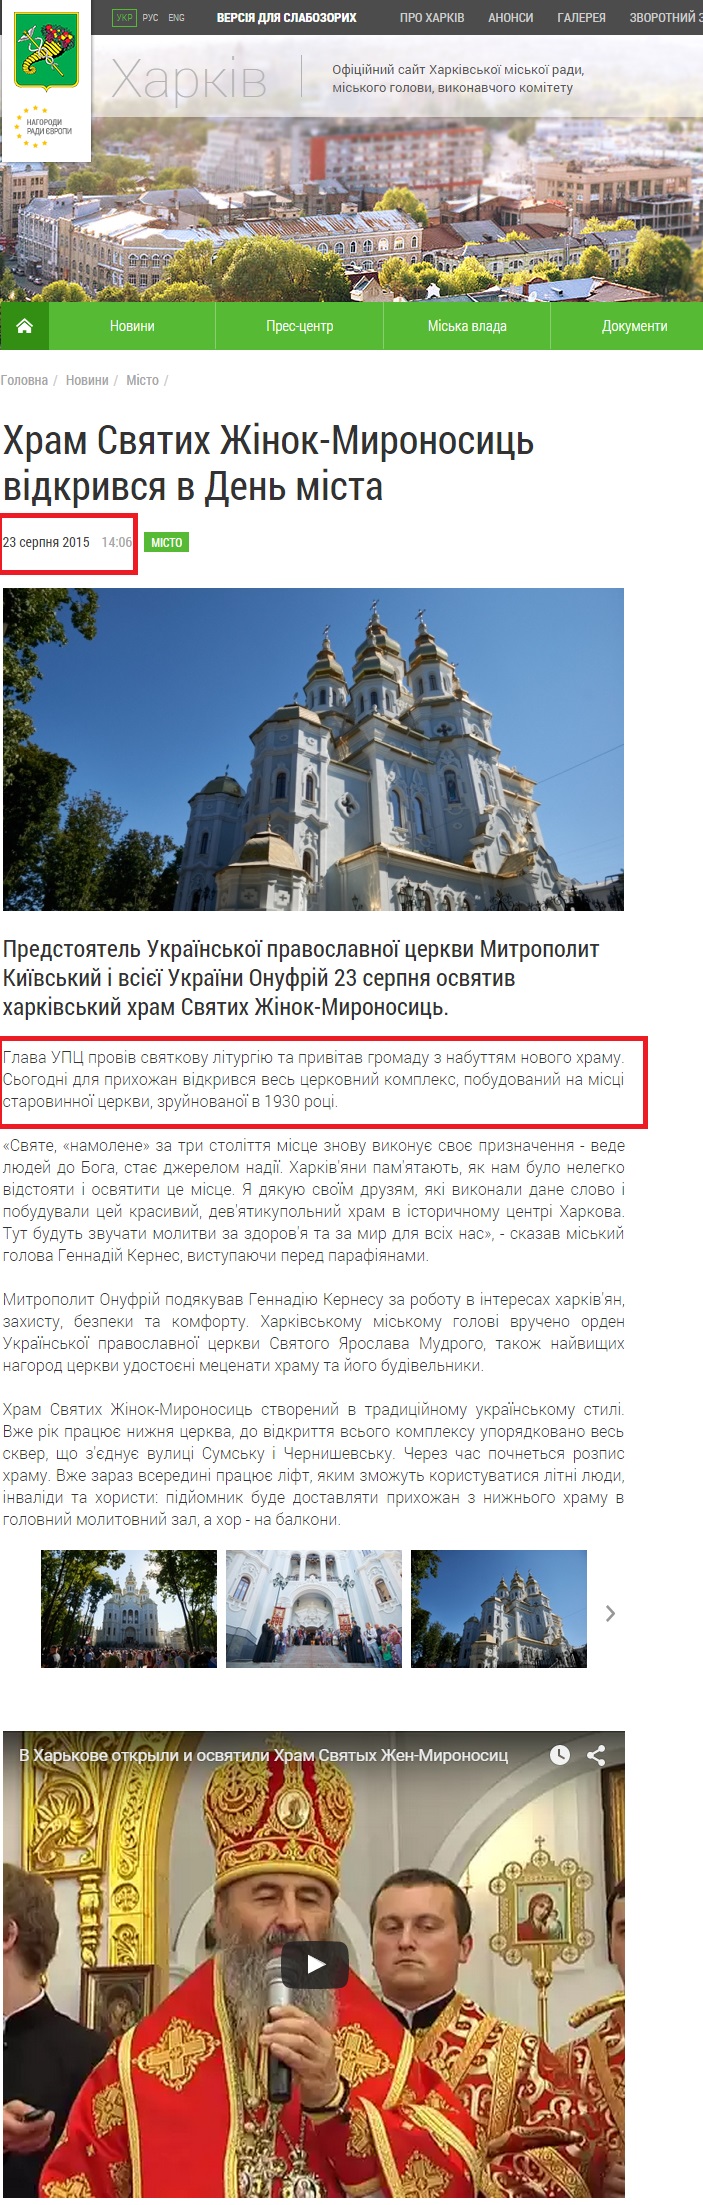 http://www.city.kharkov.ua/uk/news/khram-svyatikh-zhinok-mironosits-vidkrivsya-v-den-mista-29030.html